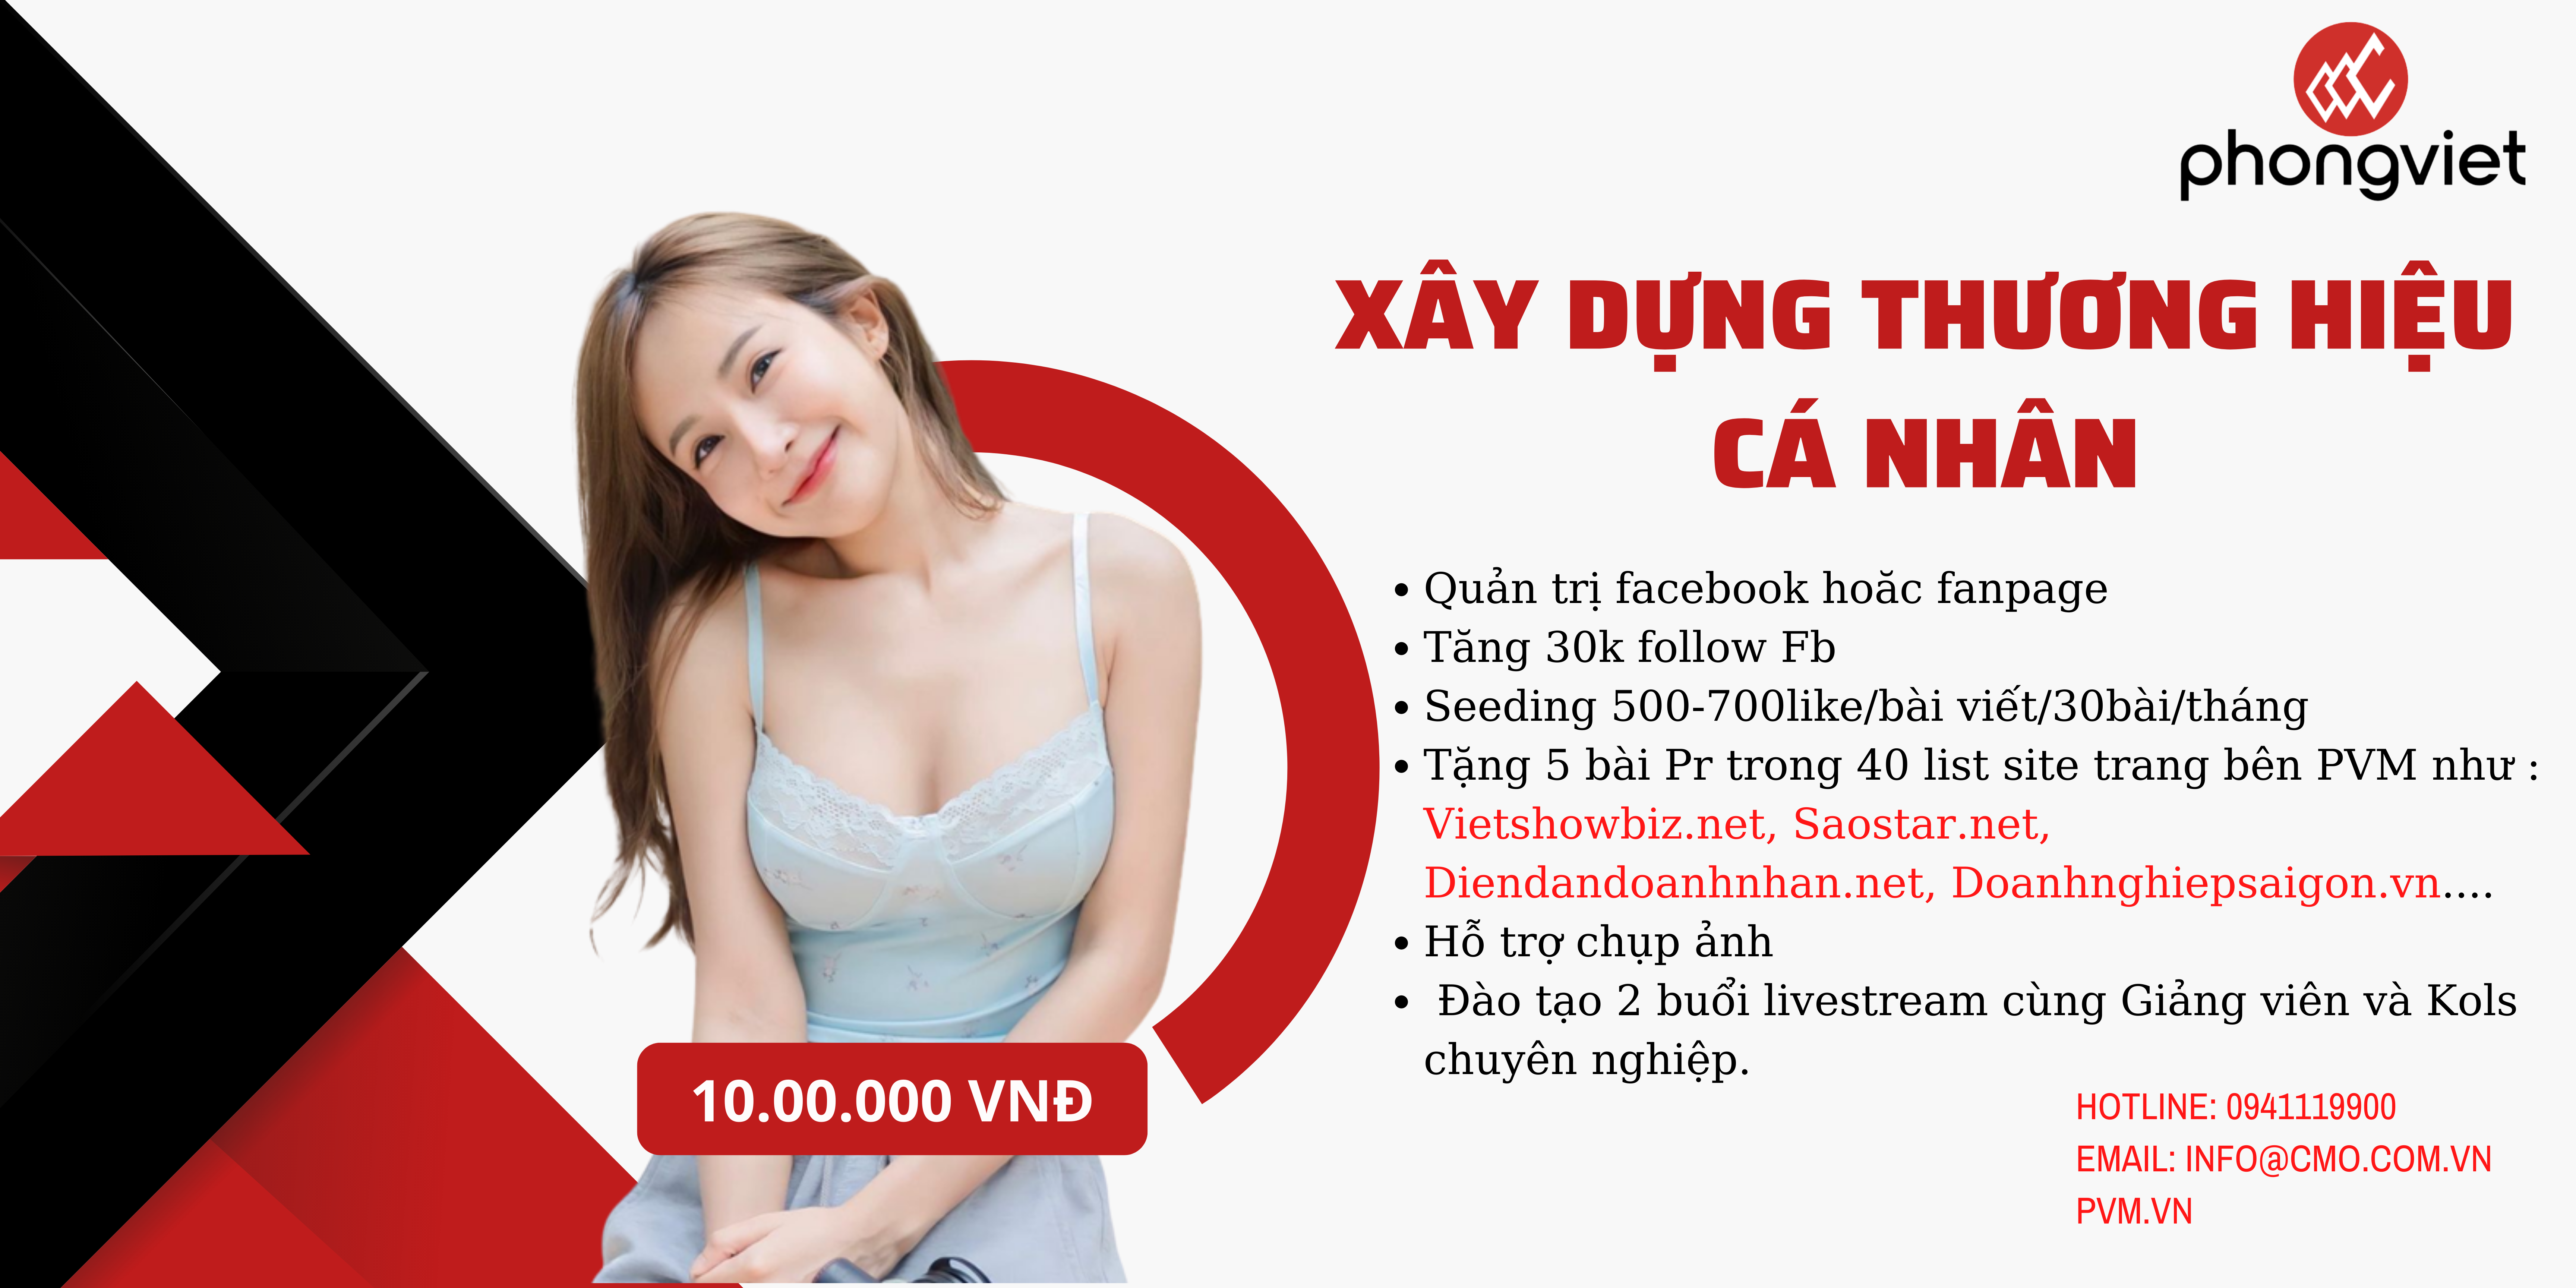 Xây dựng thương hiệu cá nhân với 10.000.000 VNĐ tại Phong Việt